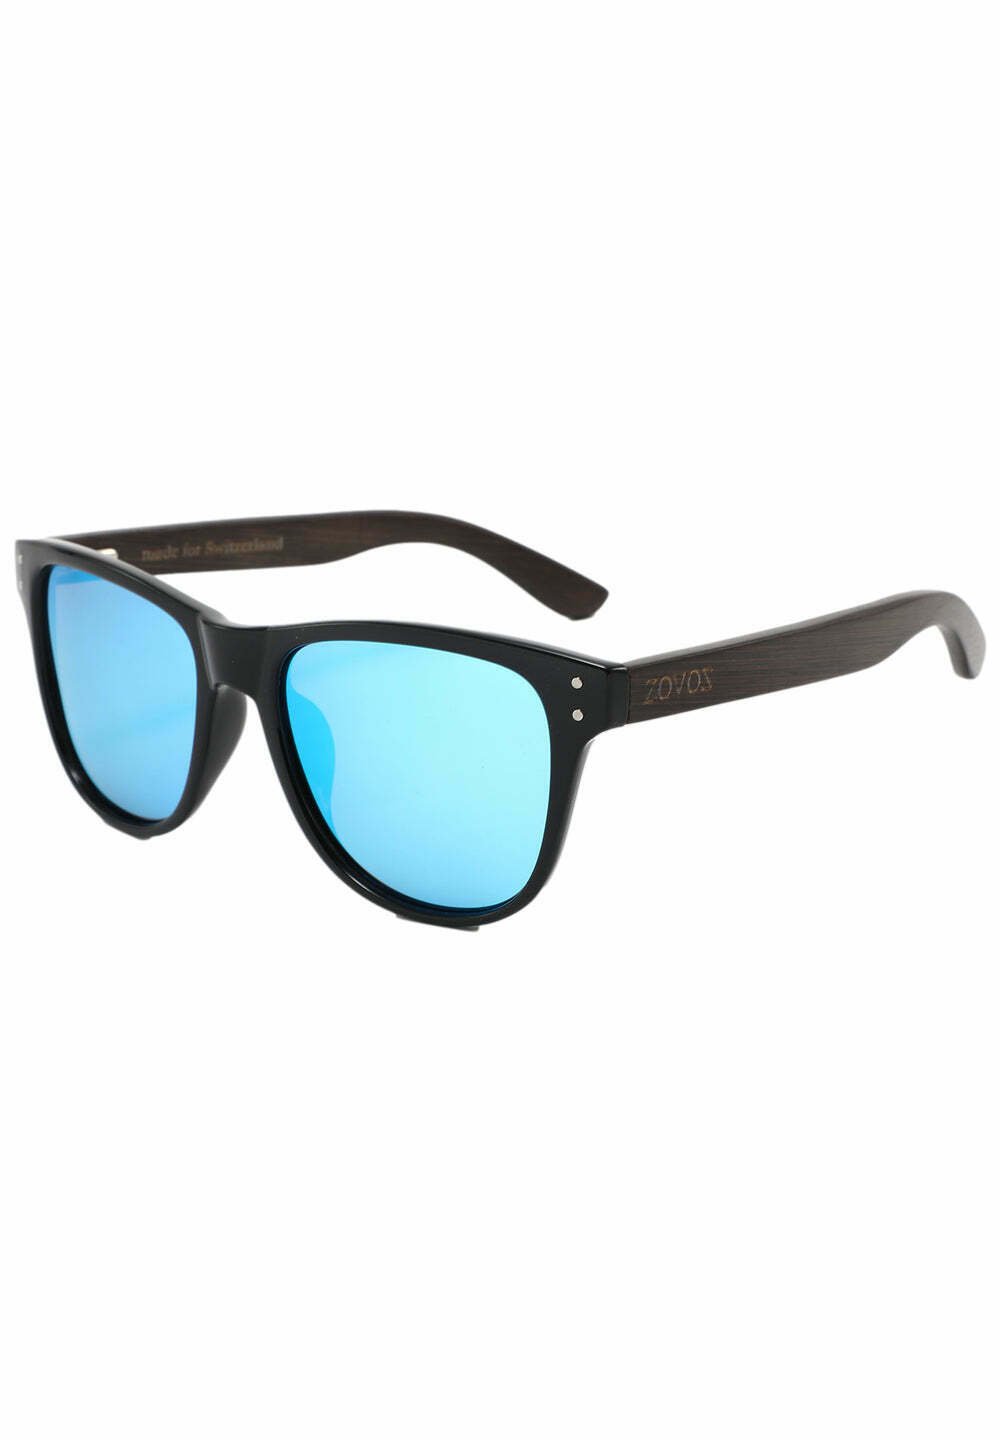 Солнцезащитные очки ATALANTA ZOVOZ, цвет blue